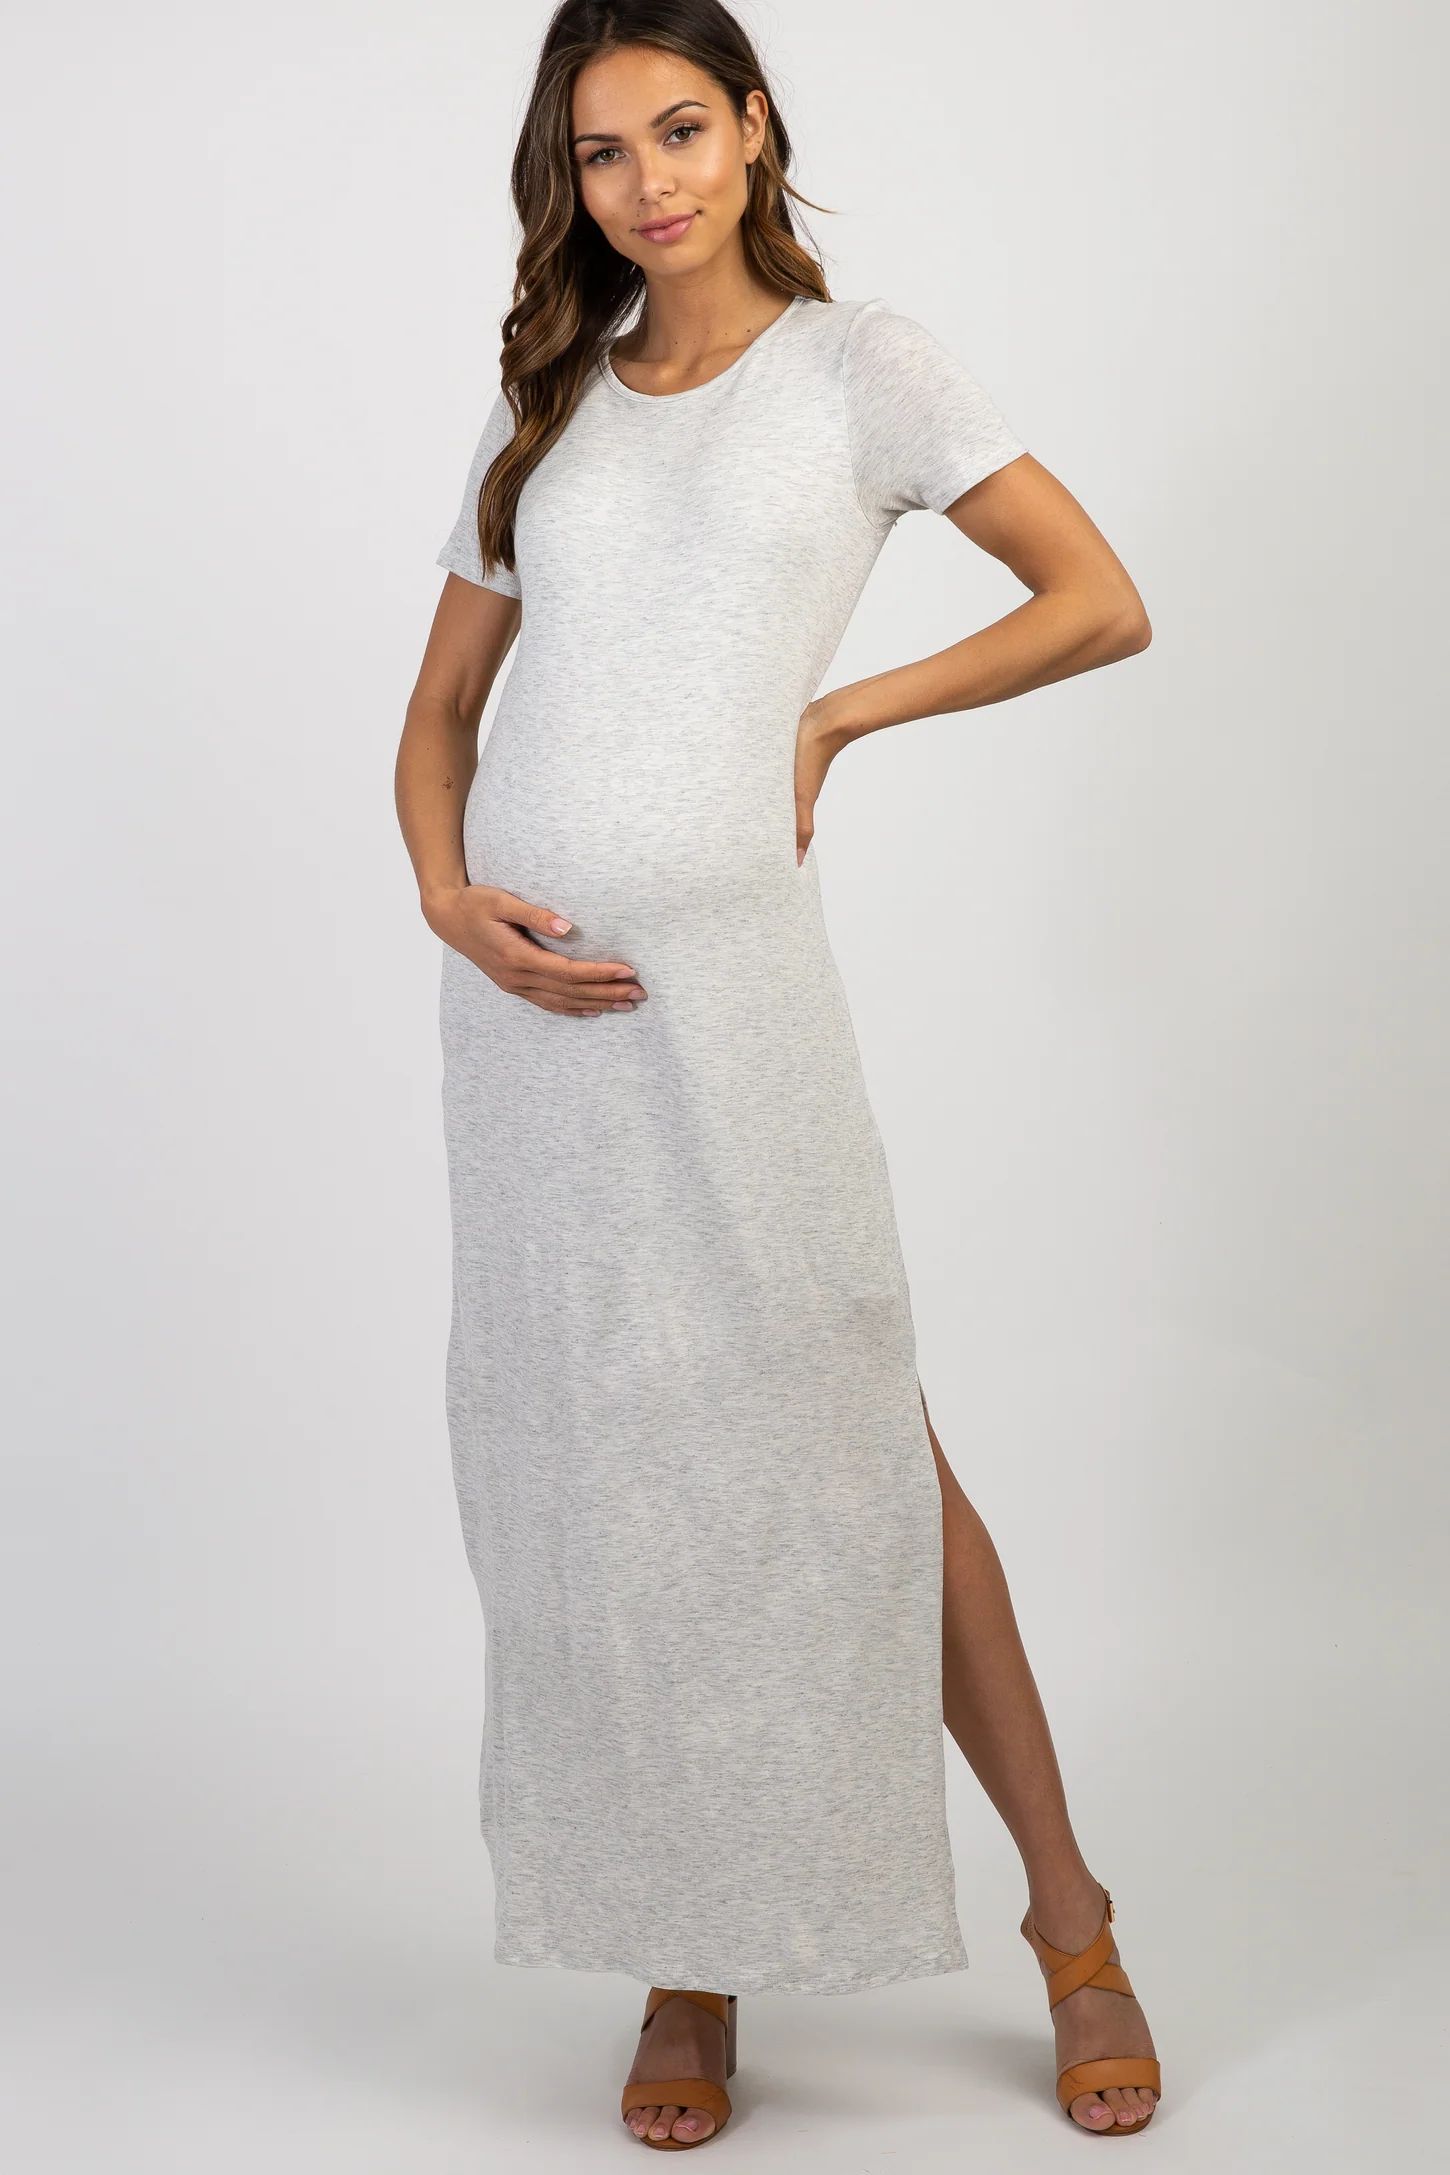 PinkBlush Grey Basic Side Slit Maternity Maxi Dress | PinkBlush Maternity